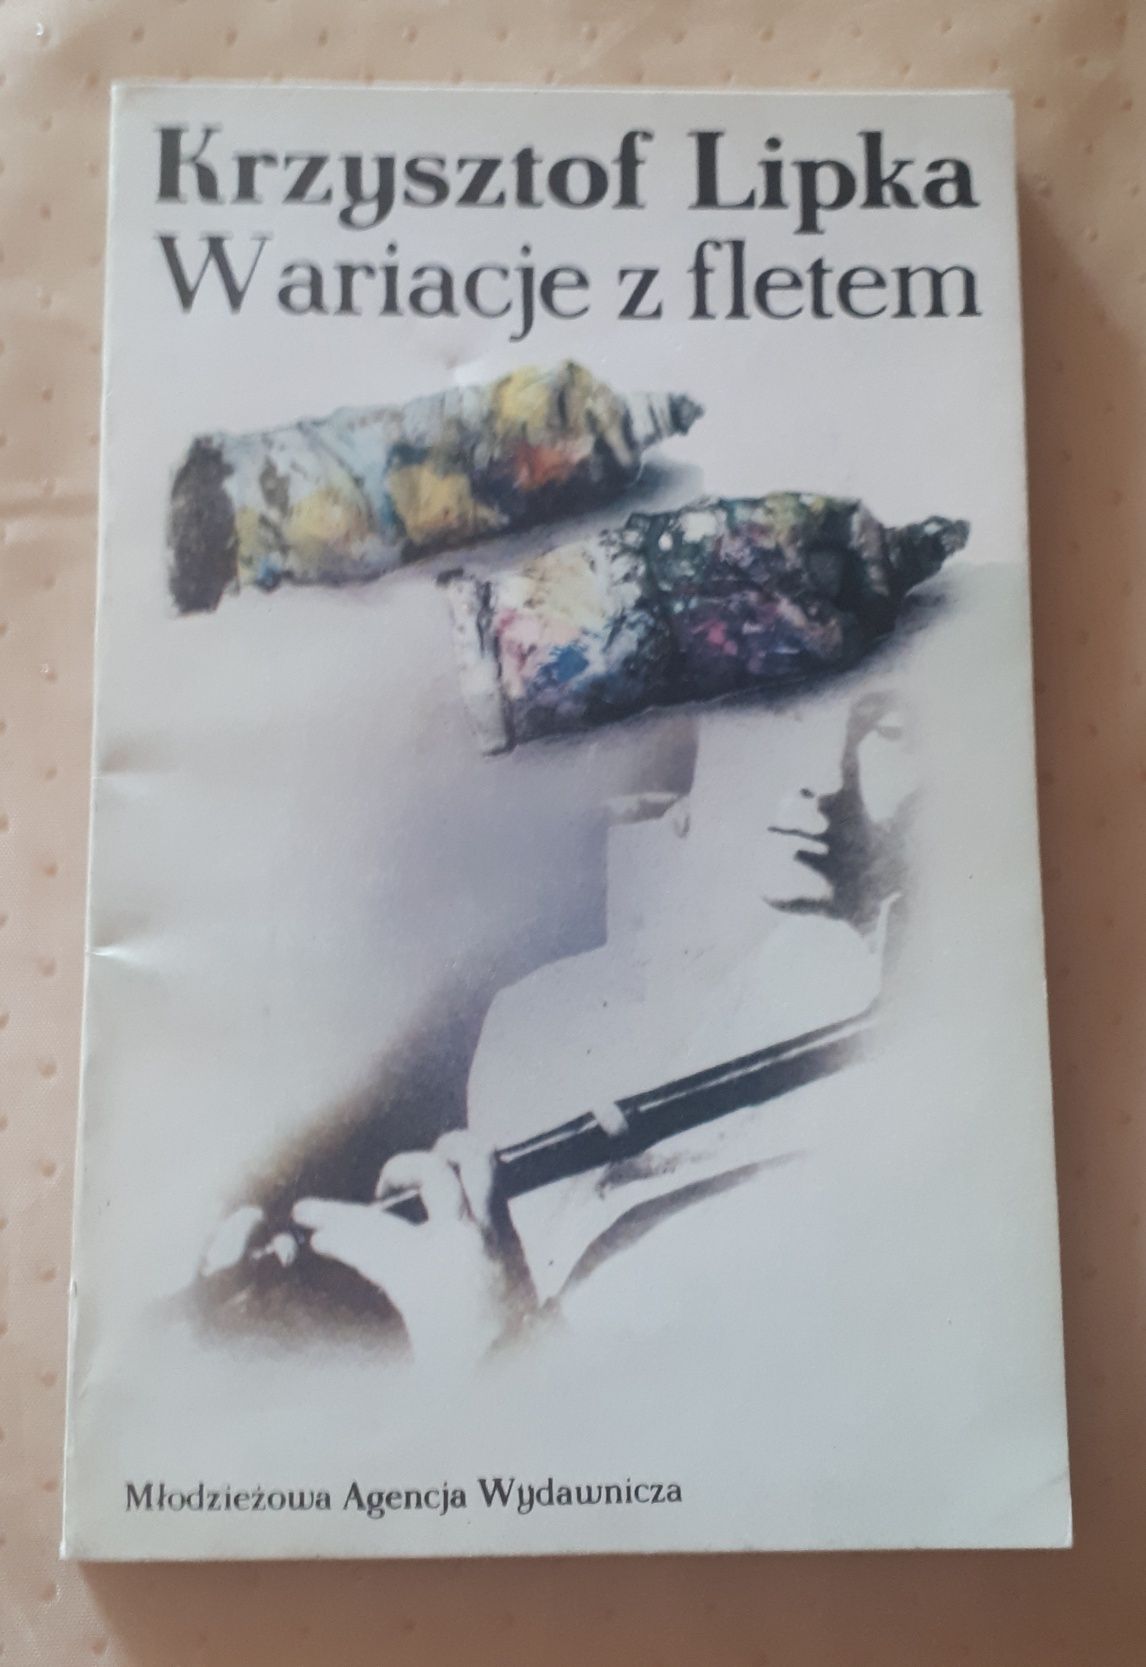 WARIACJE Z FLETEM Krzysztof Lipka 1989